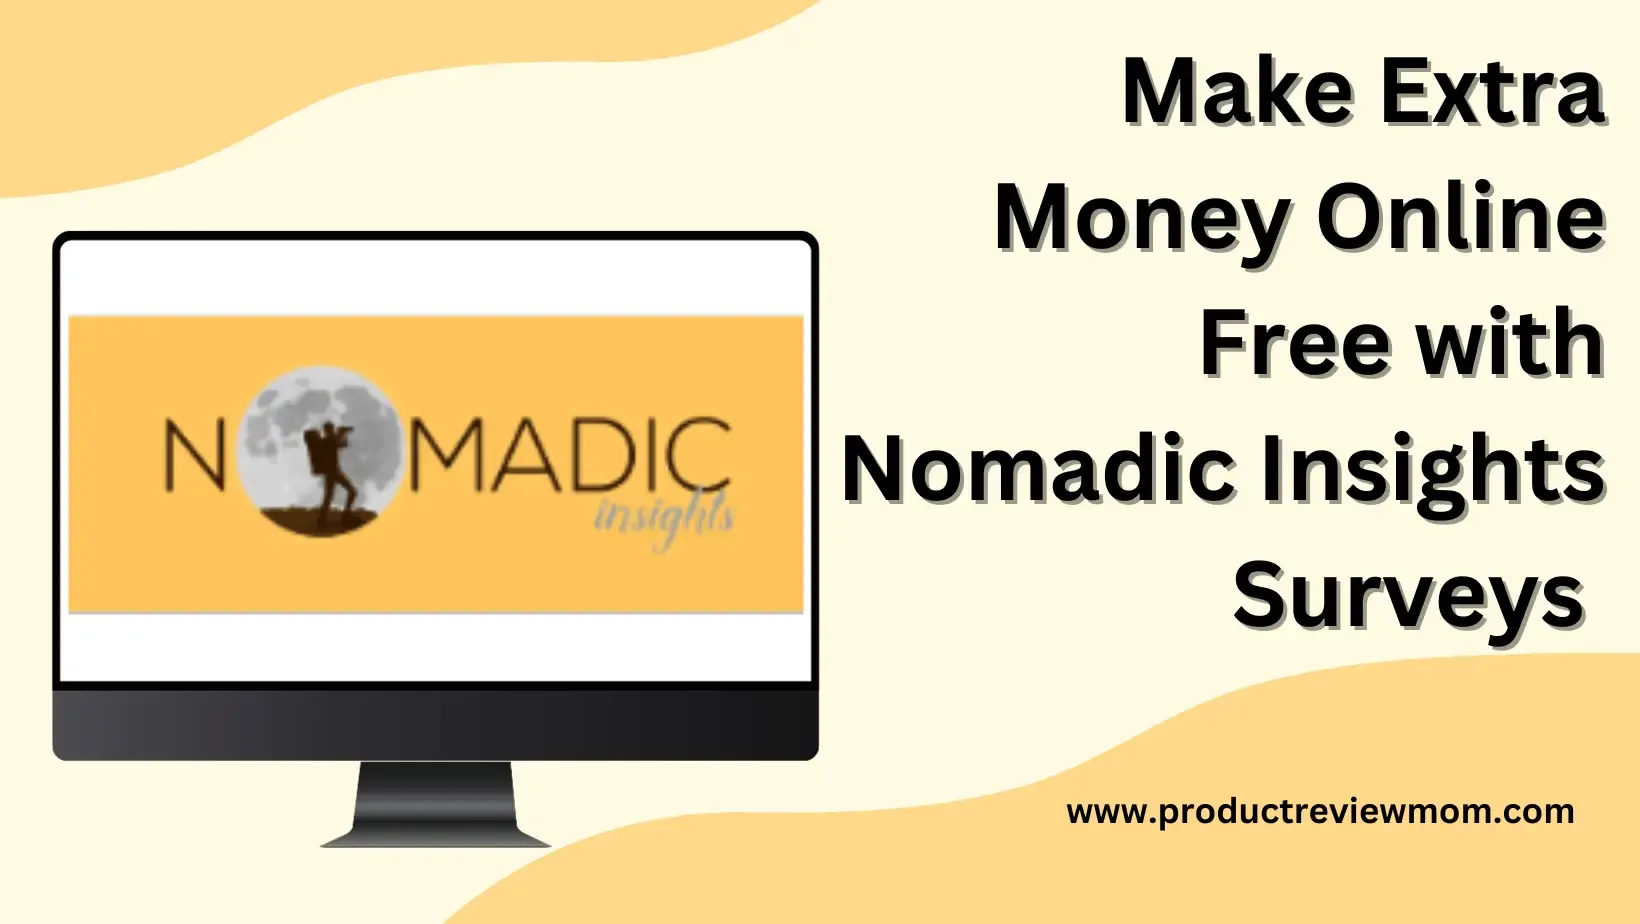 Make Extra Money Online Free with Nomadic Insights Surveys